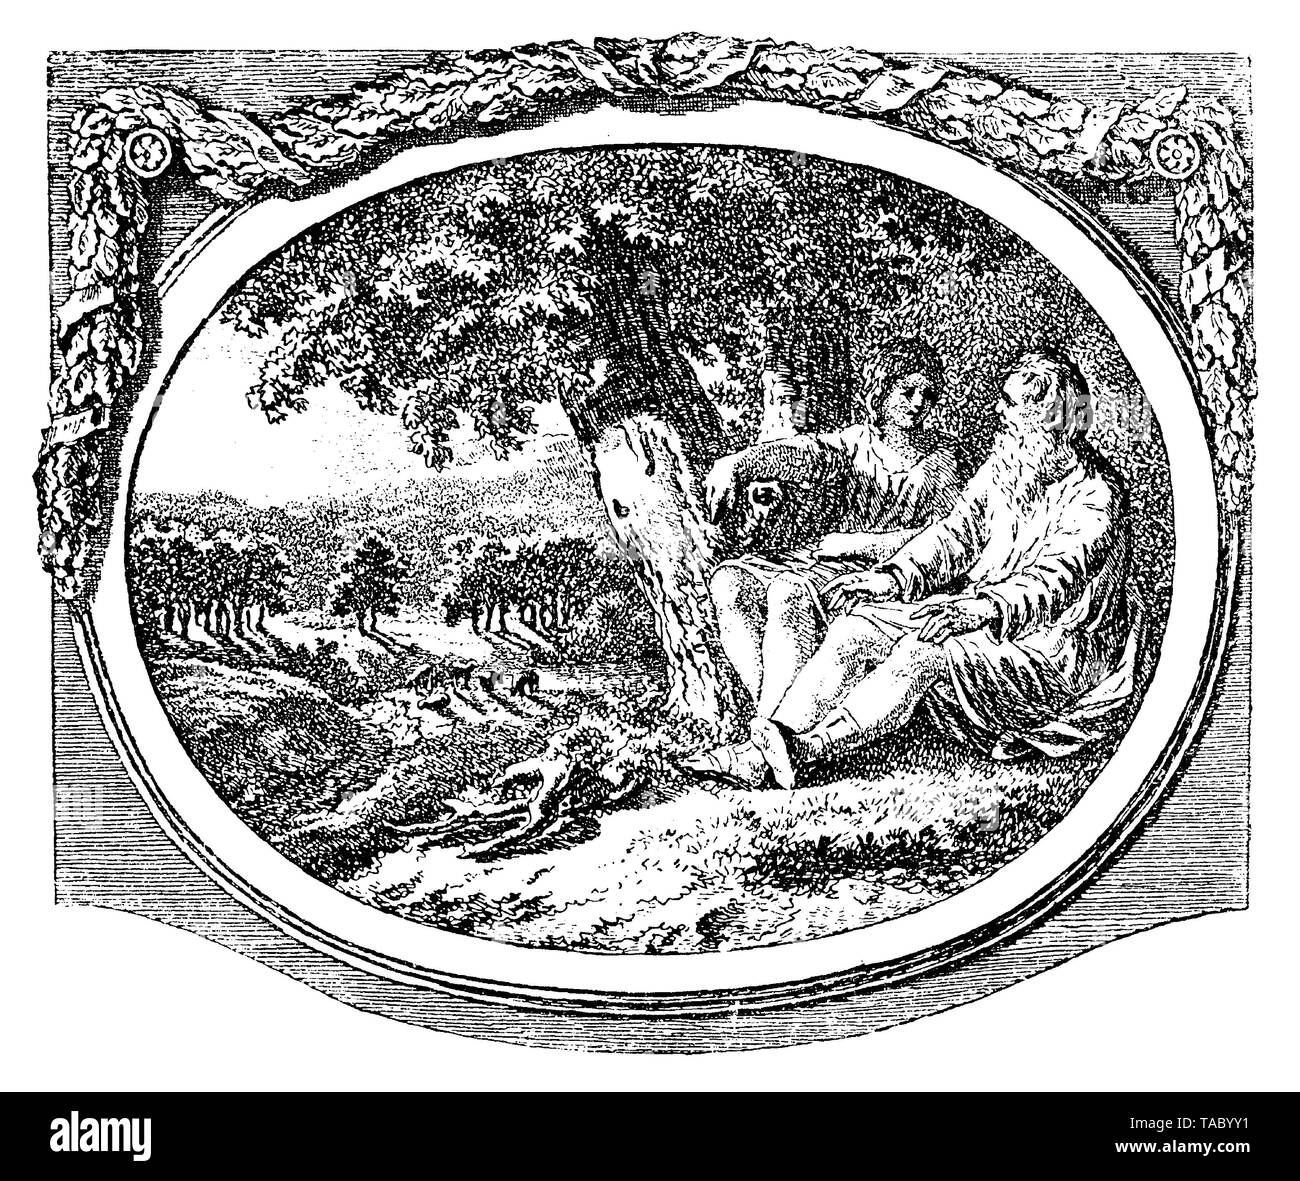 Scena pastorale con un uomo anziano e una giovane donna come due divinità greche seduto sotto l'ombra di un albero, capitolo decorazione da Salomon Gessner xviii secolo Foto Stock